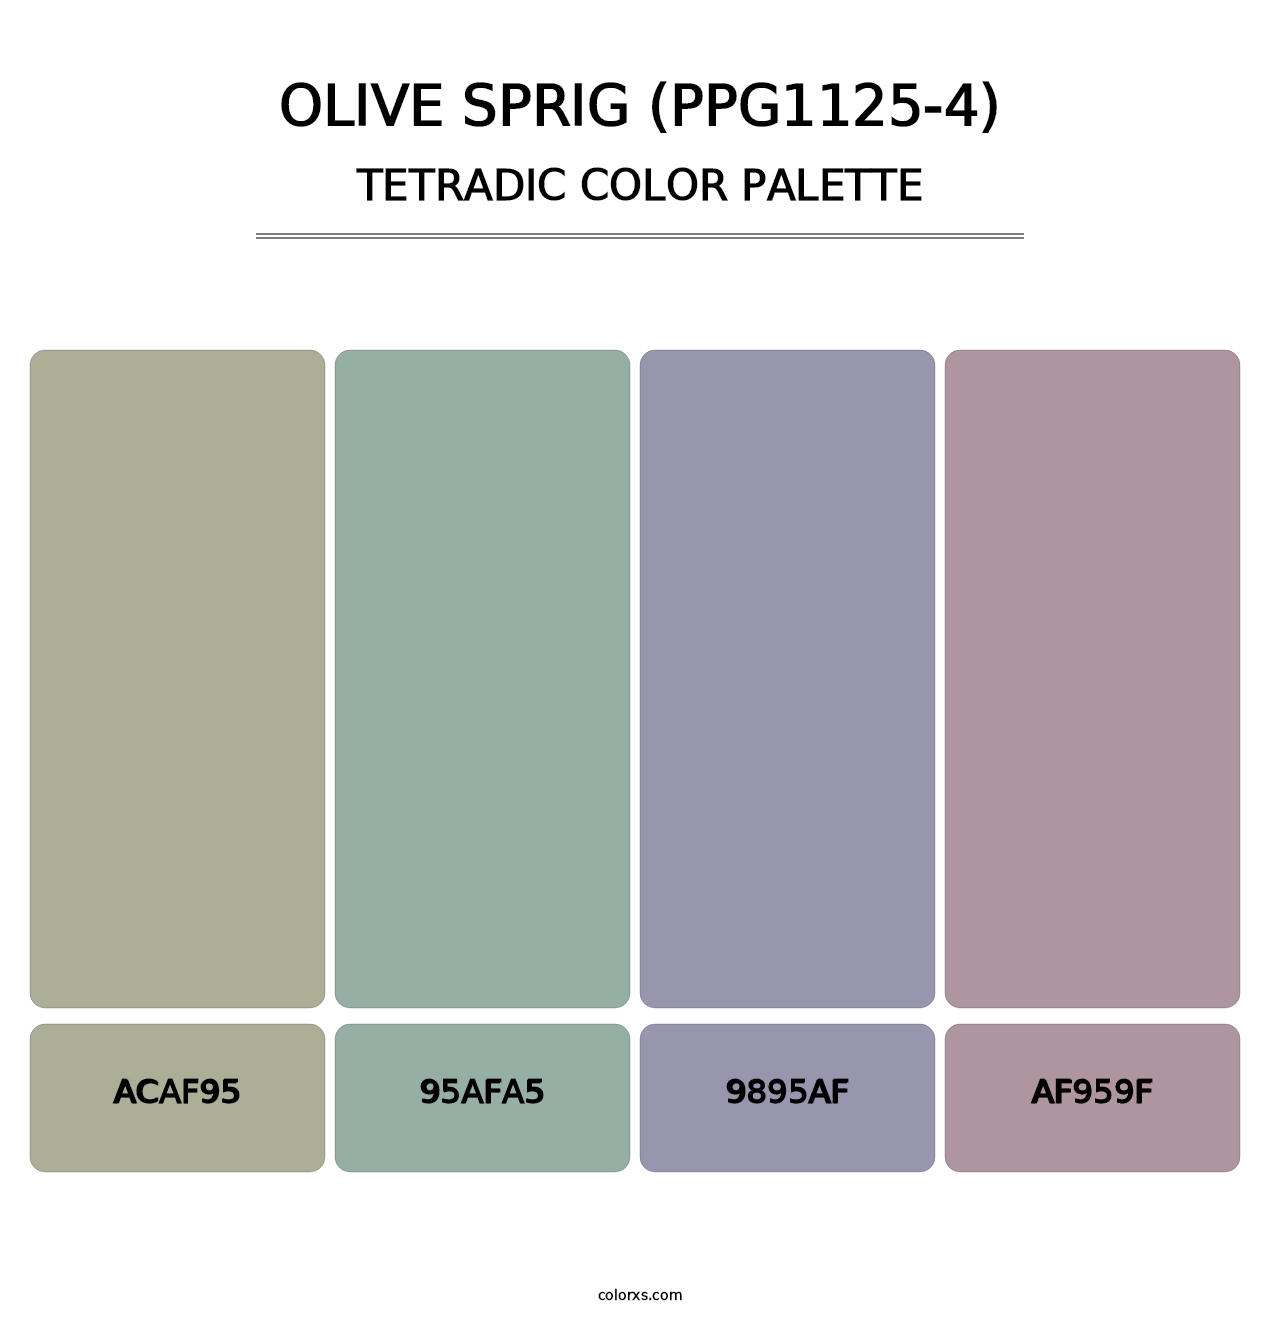 Olive Sprig (PPG1125-4) - Tetradic Color Palette